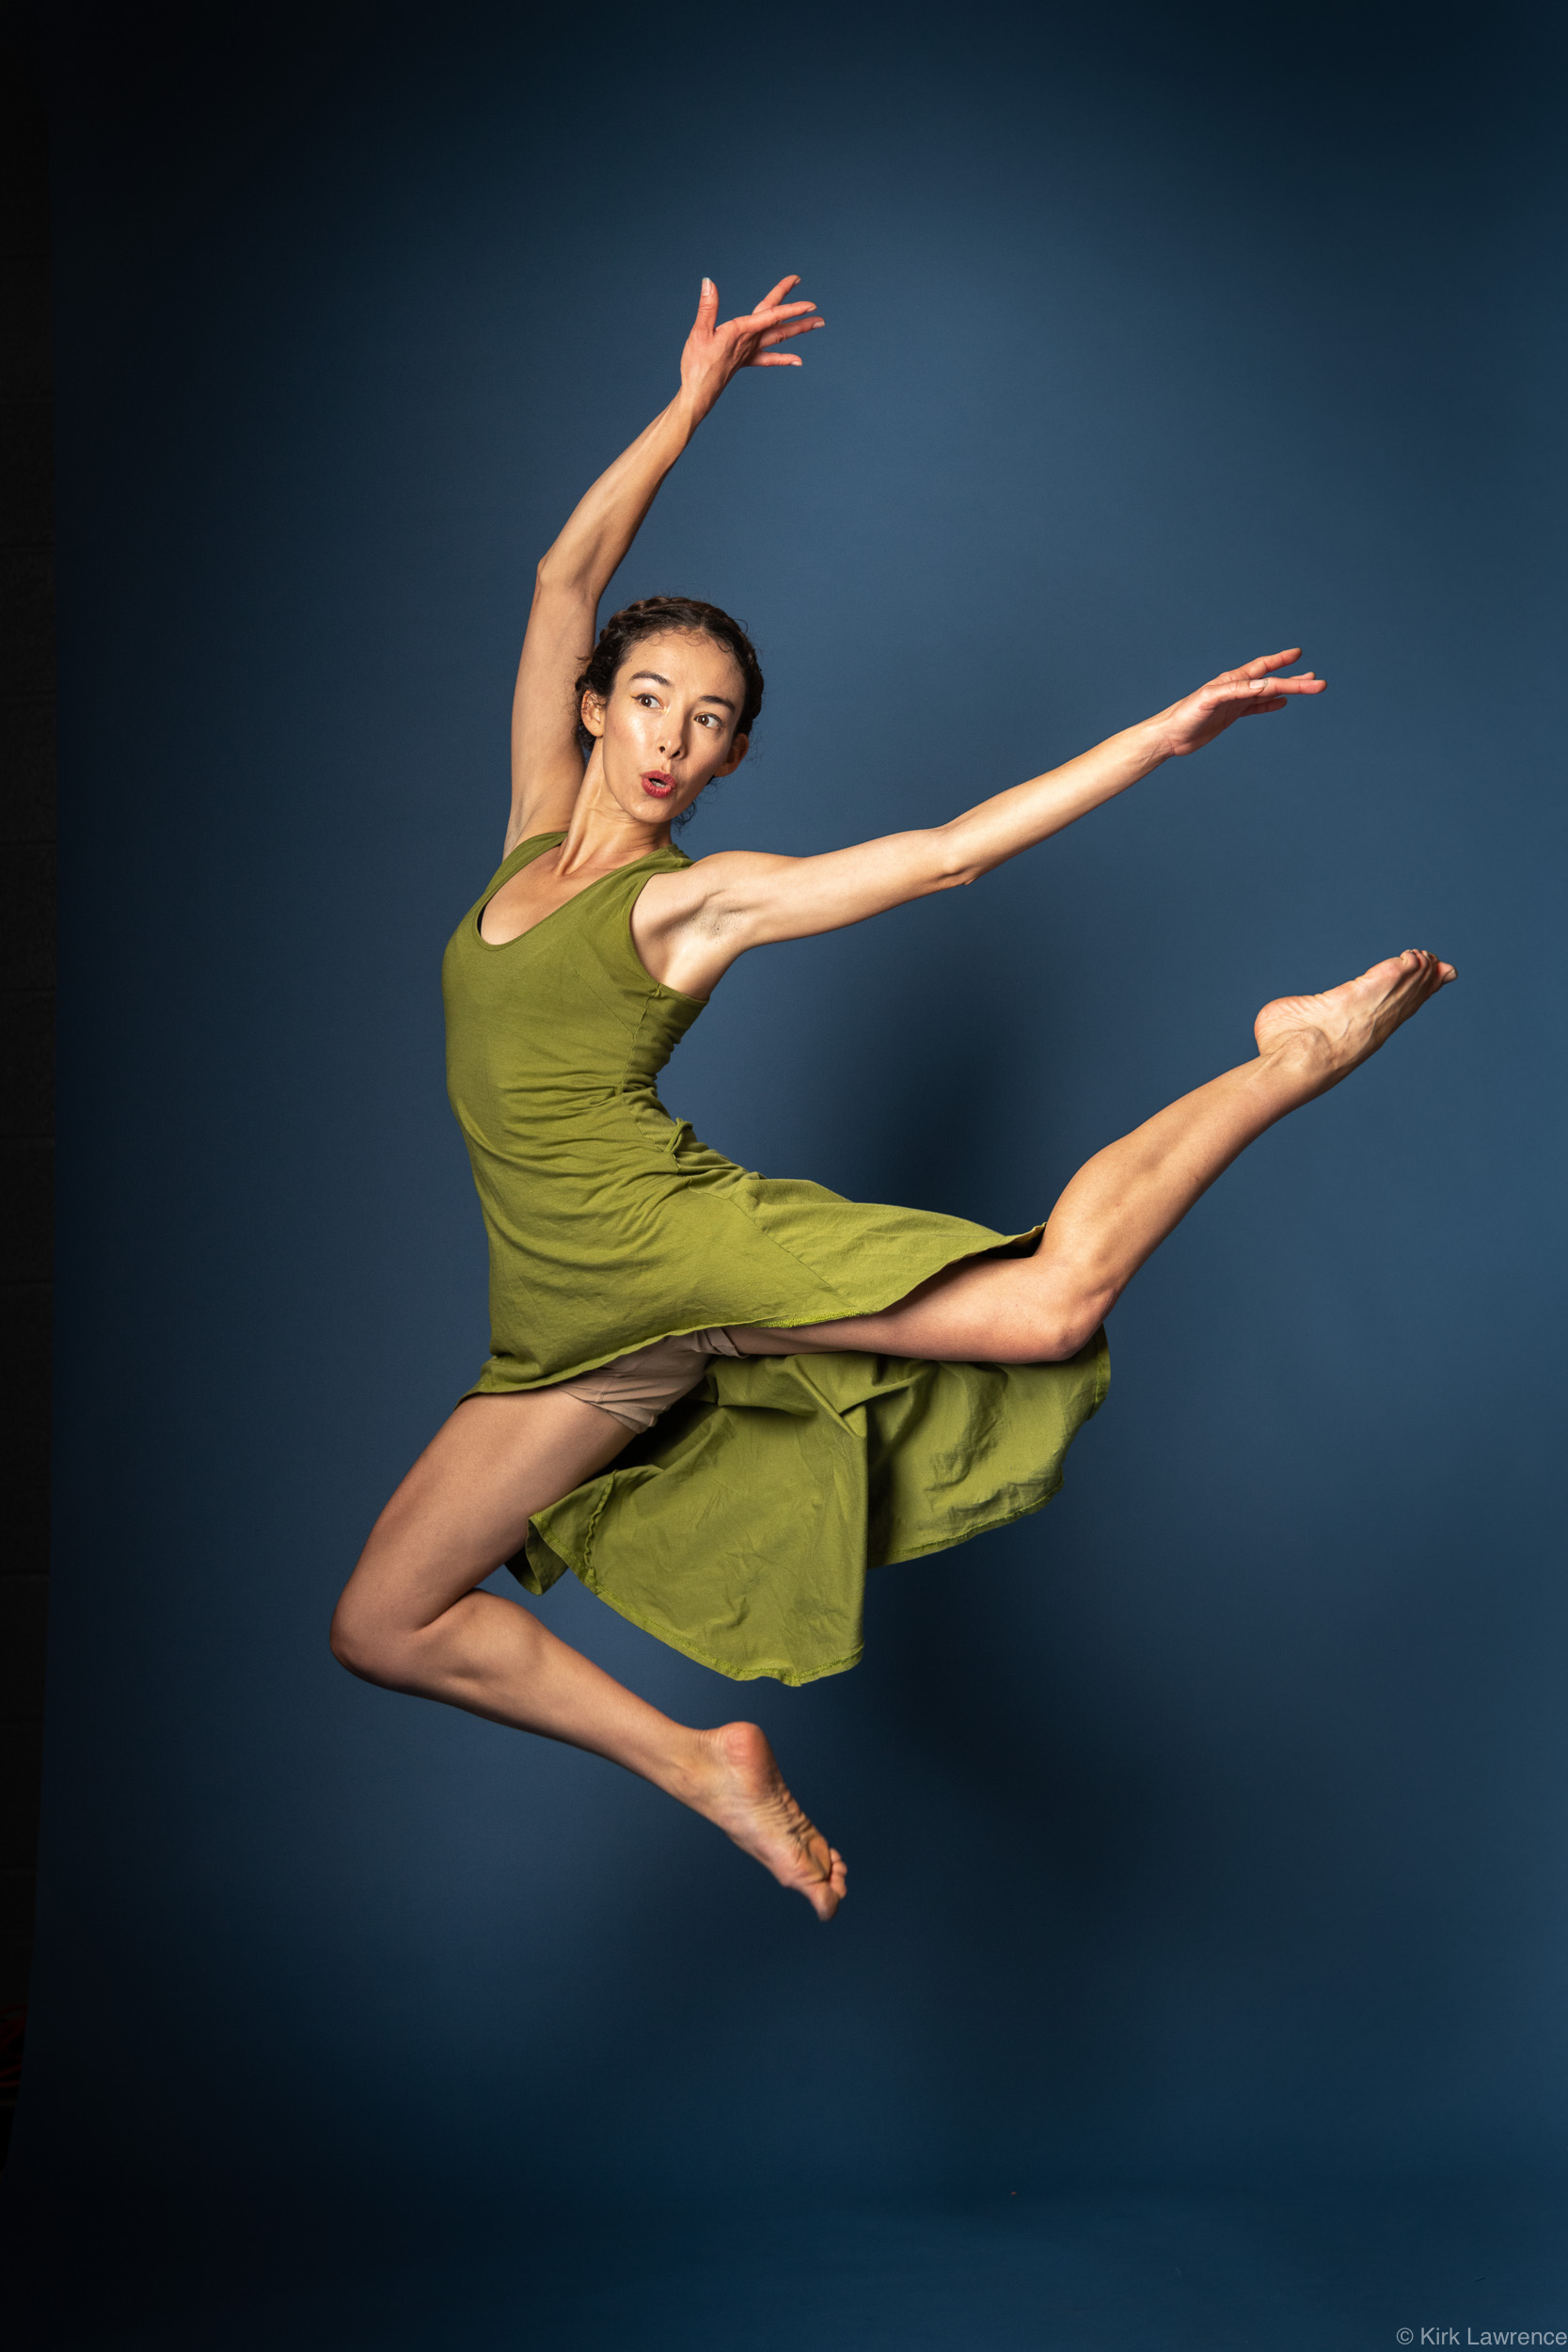 modern_dancer_jumping_green_dress.jpg